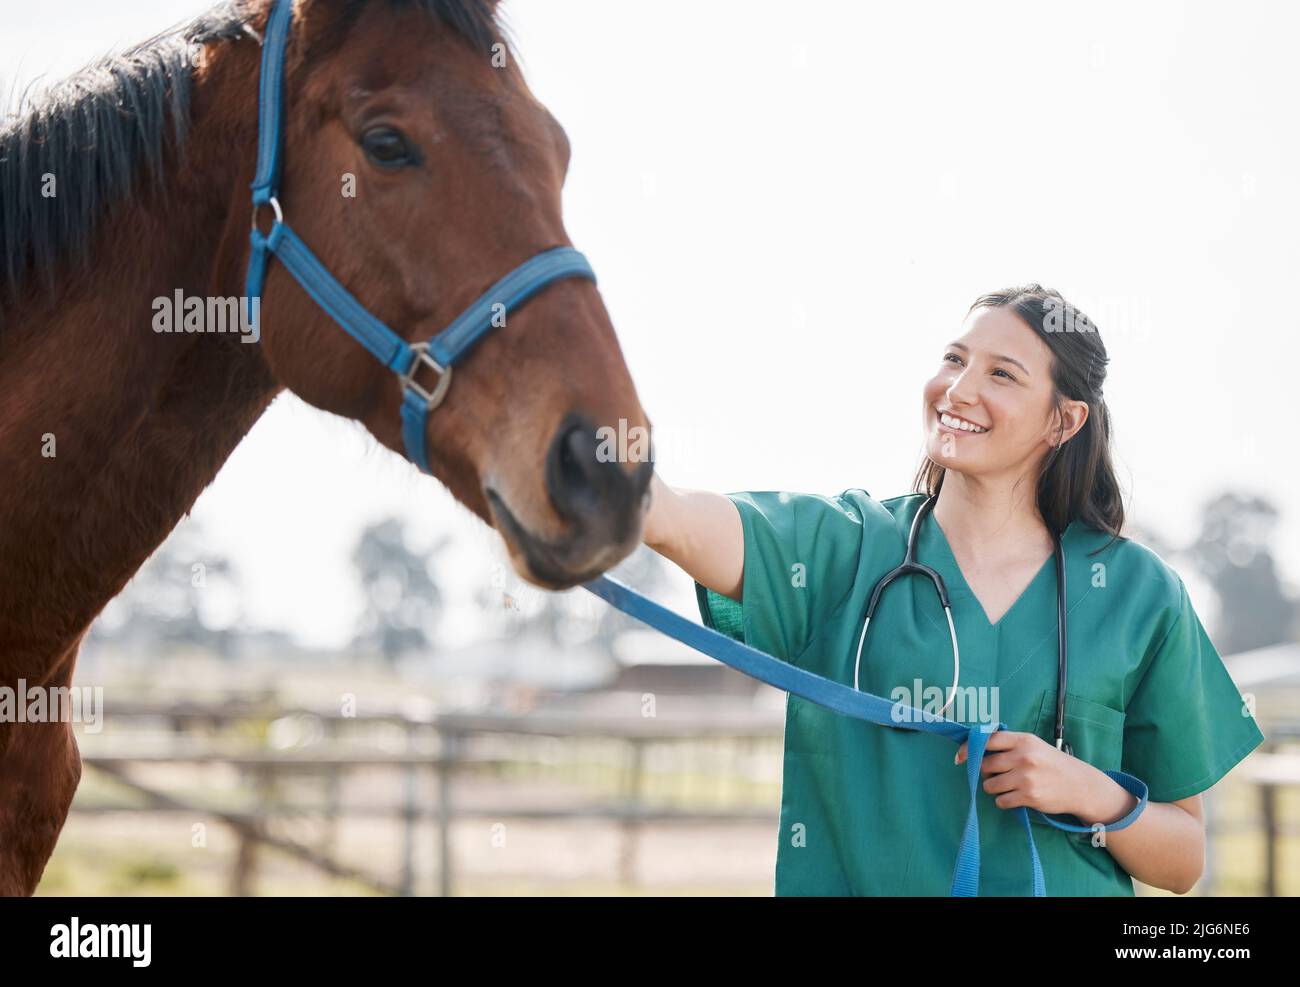 Nun, du bist in kürzester Zeit im Rennen. Aufnahme eines attraktiven jungen Tierarztes, der allein steht und sich auf einem Bauernhof um ein Pferd kümmert. Stockfoto